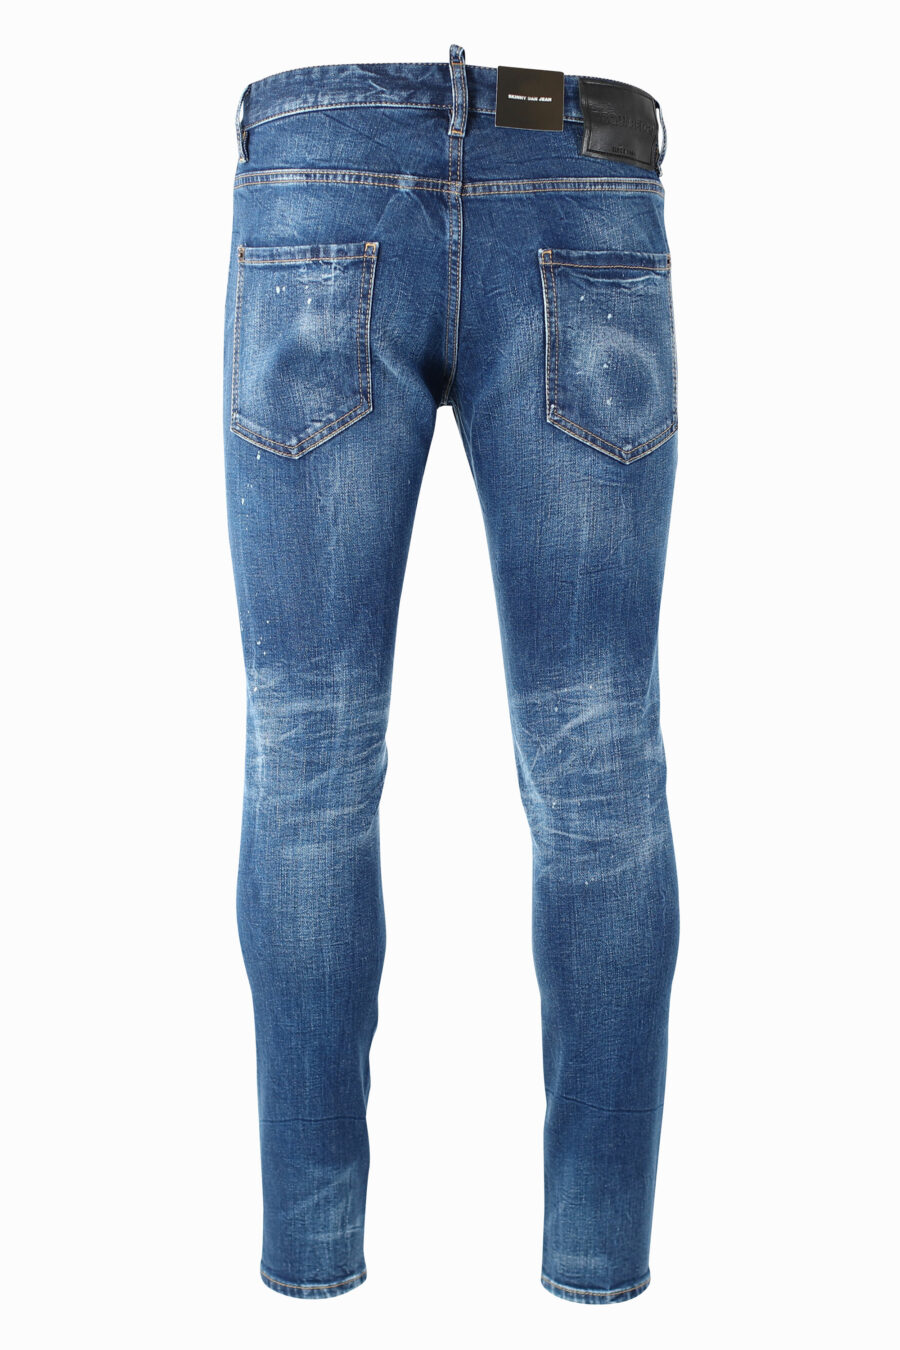 Pantalón vaquero "Skinny Dan Jean" azul con maxilogo "icon" frontal - IMG 0982